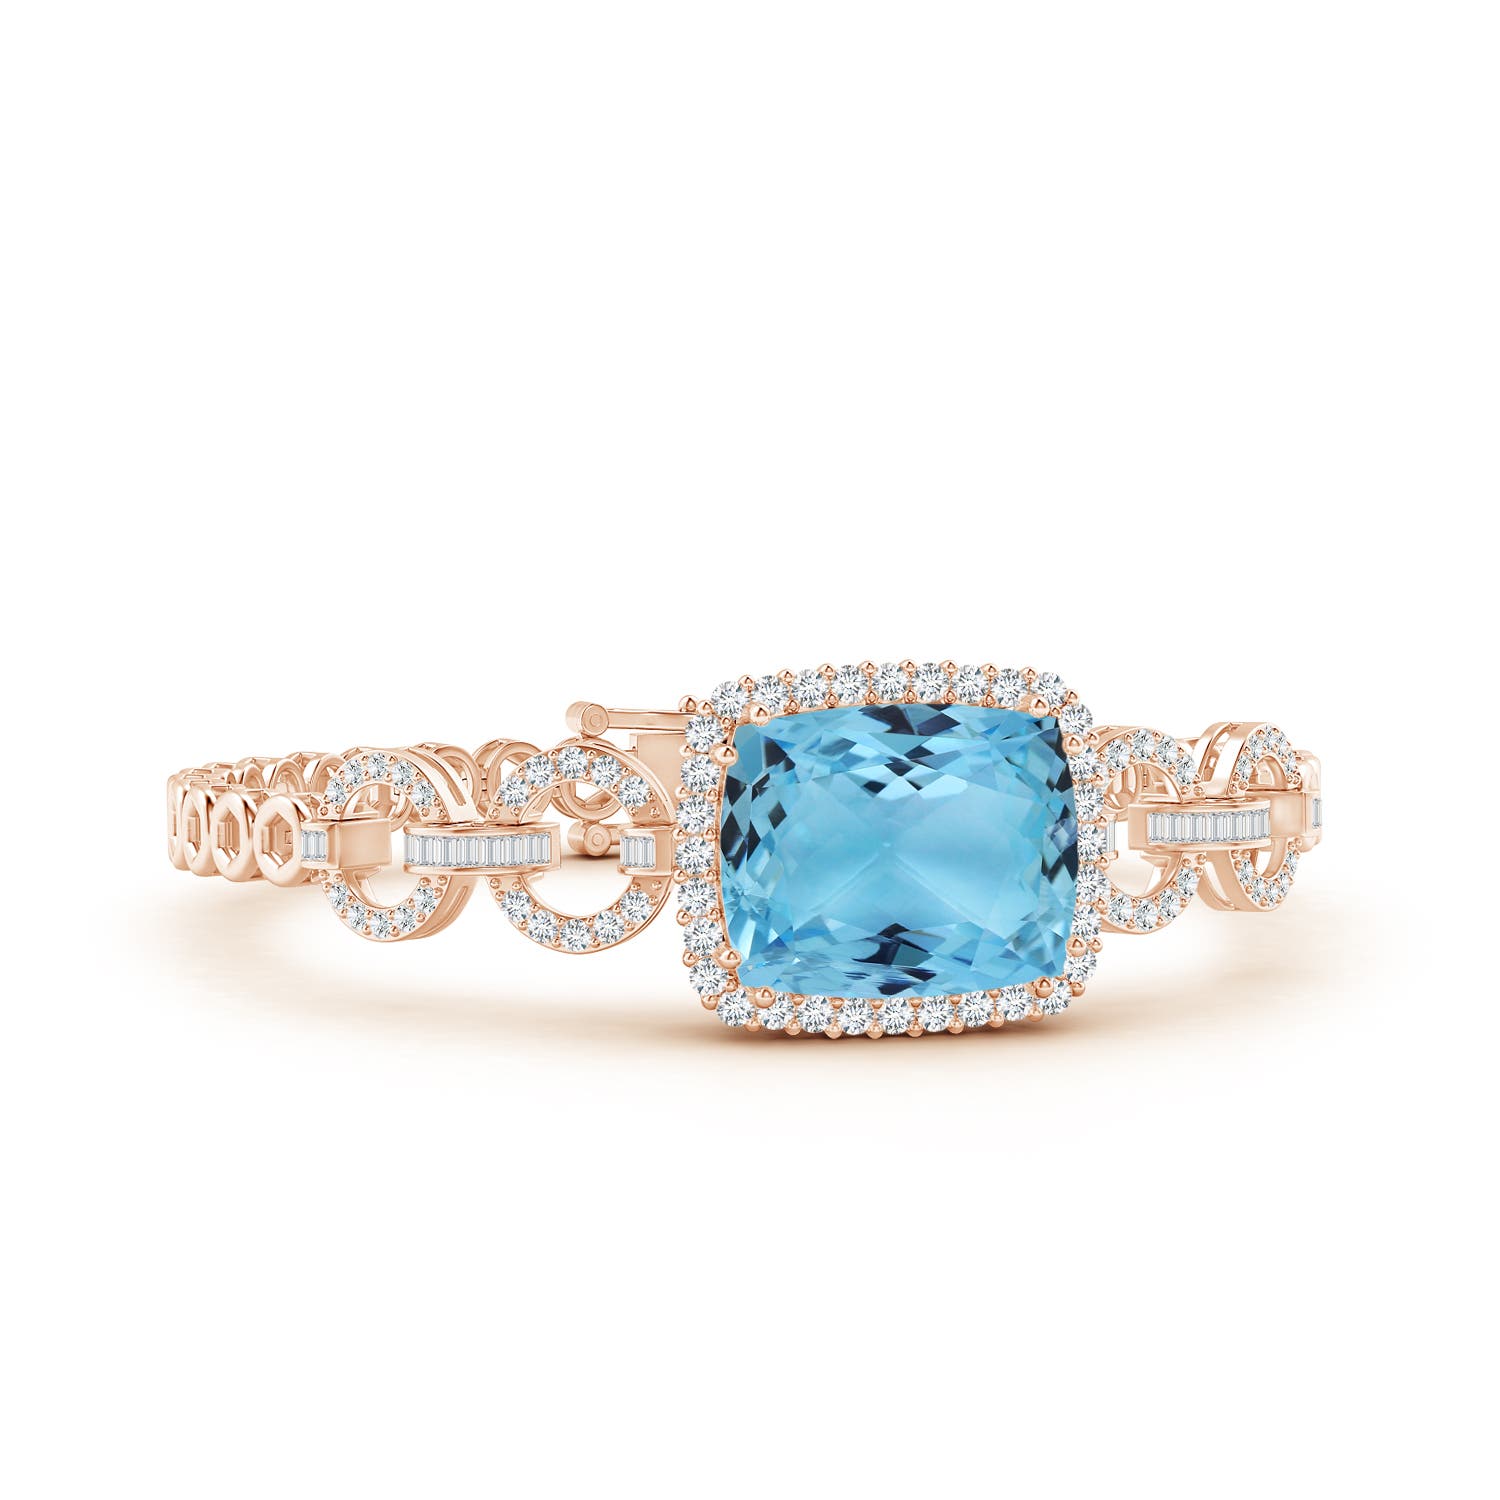 Gia certified rectangular cushion aquamarine multi-link bracelet with halo